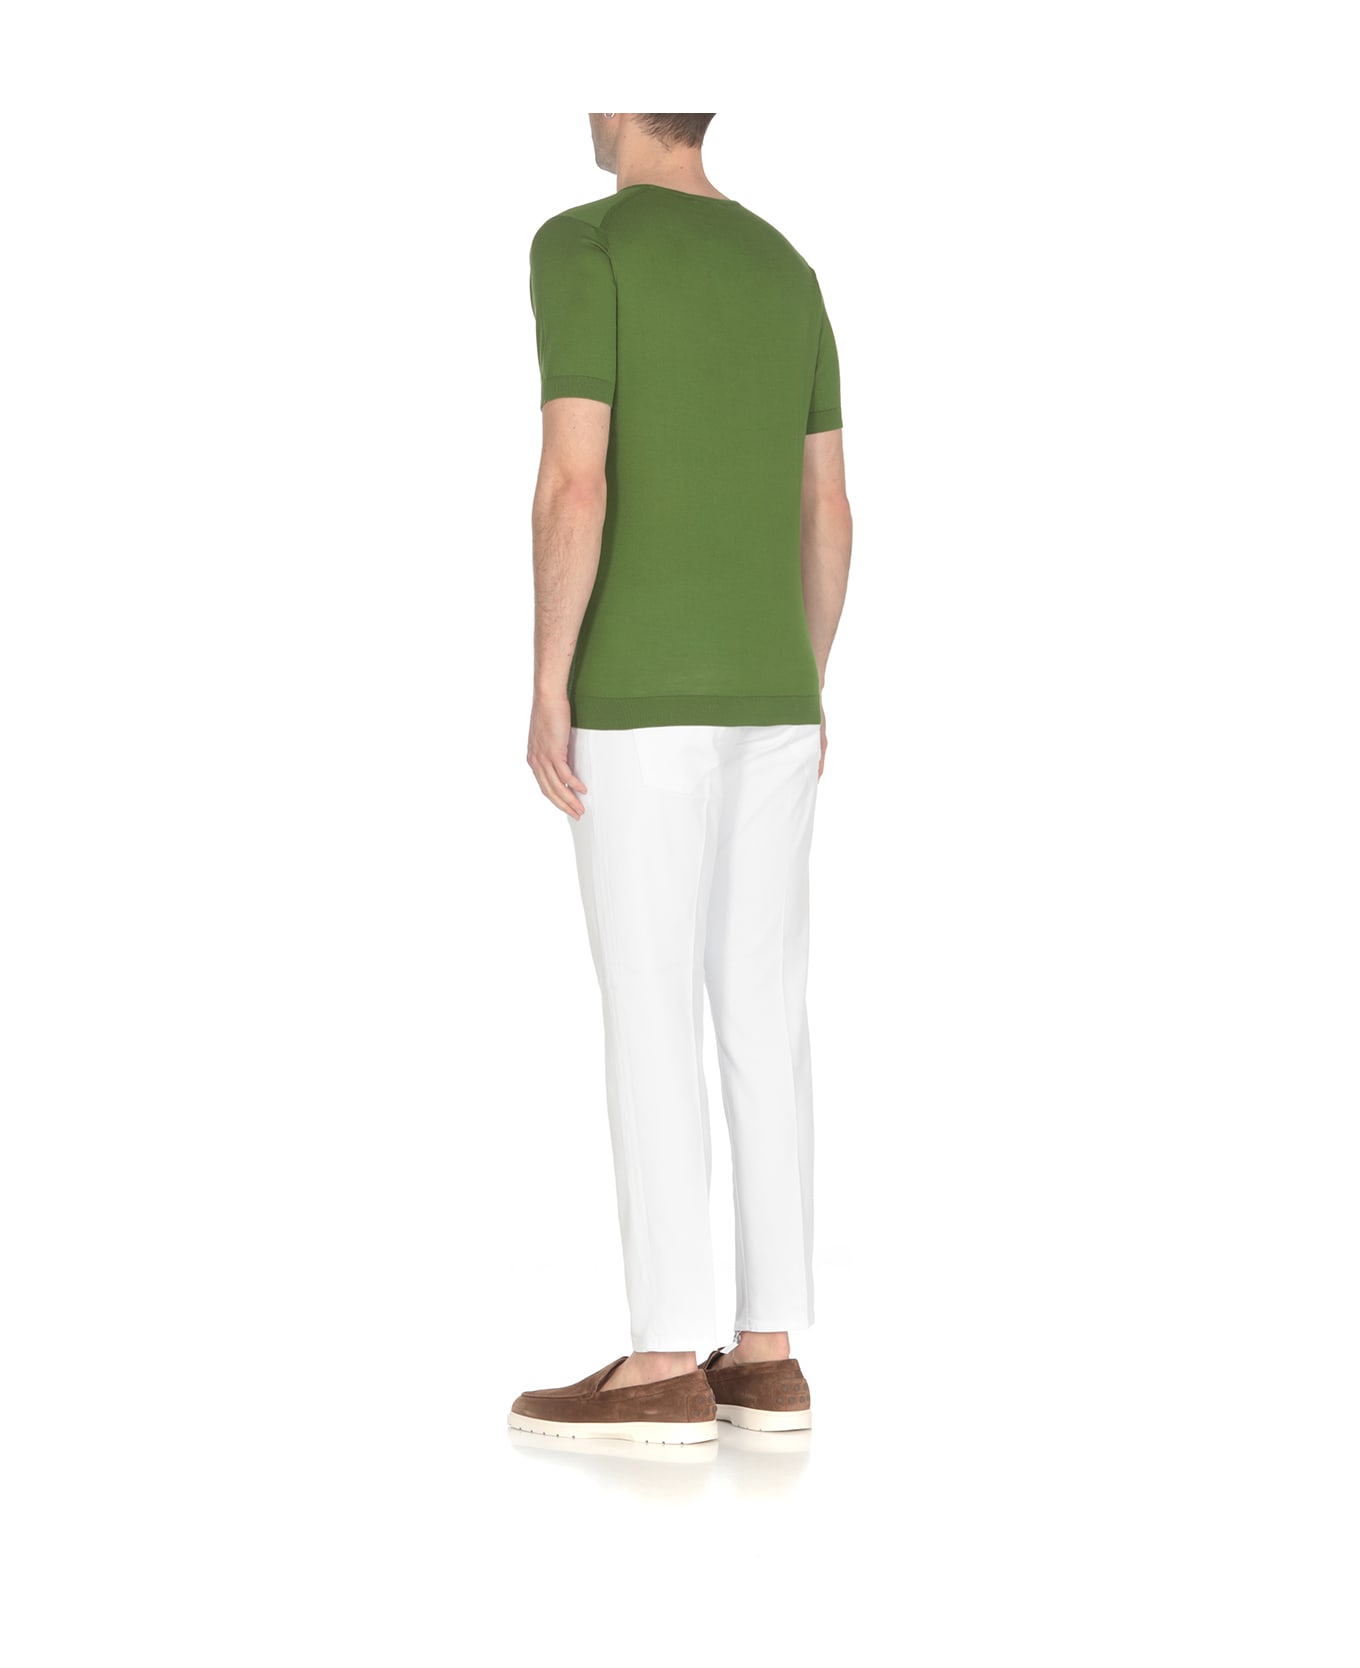 John Smedley Belden T-shirt - Green